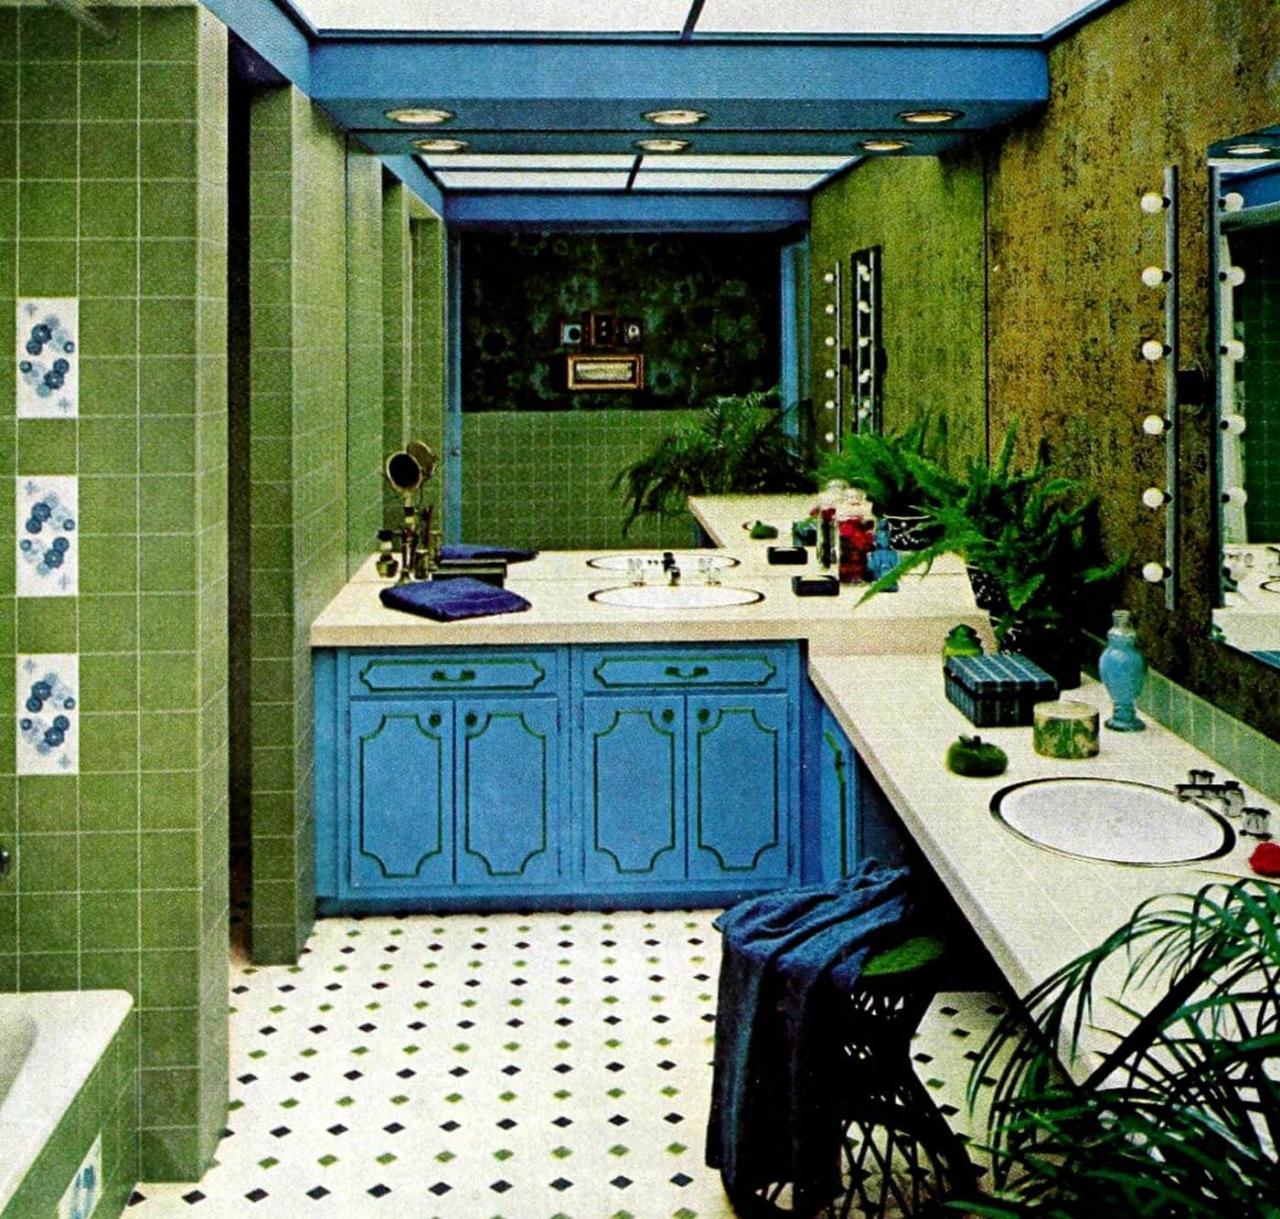 Vintage Blue Tile Bathroom Ideas picwabbit